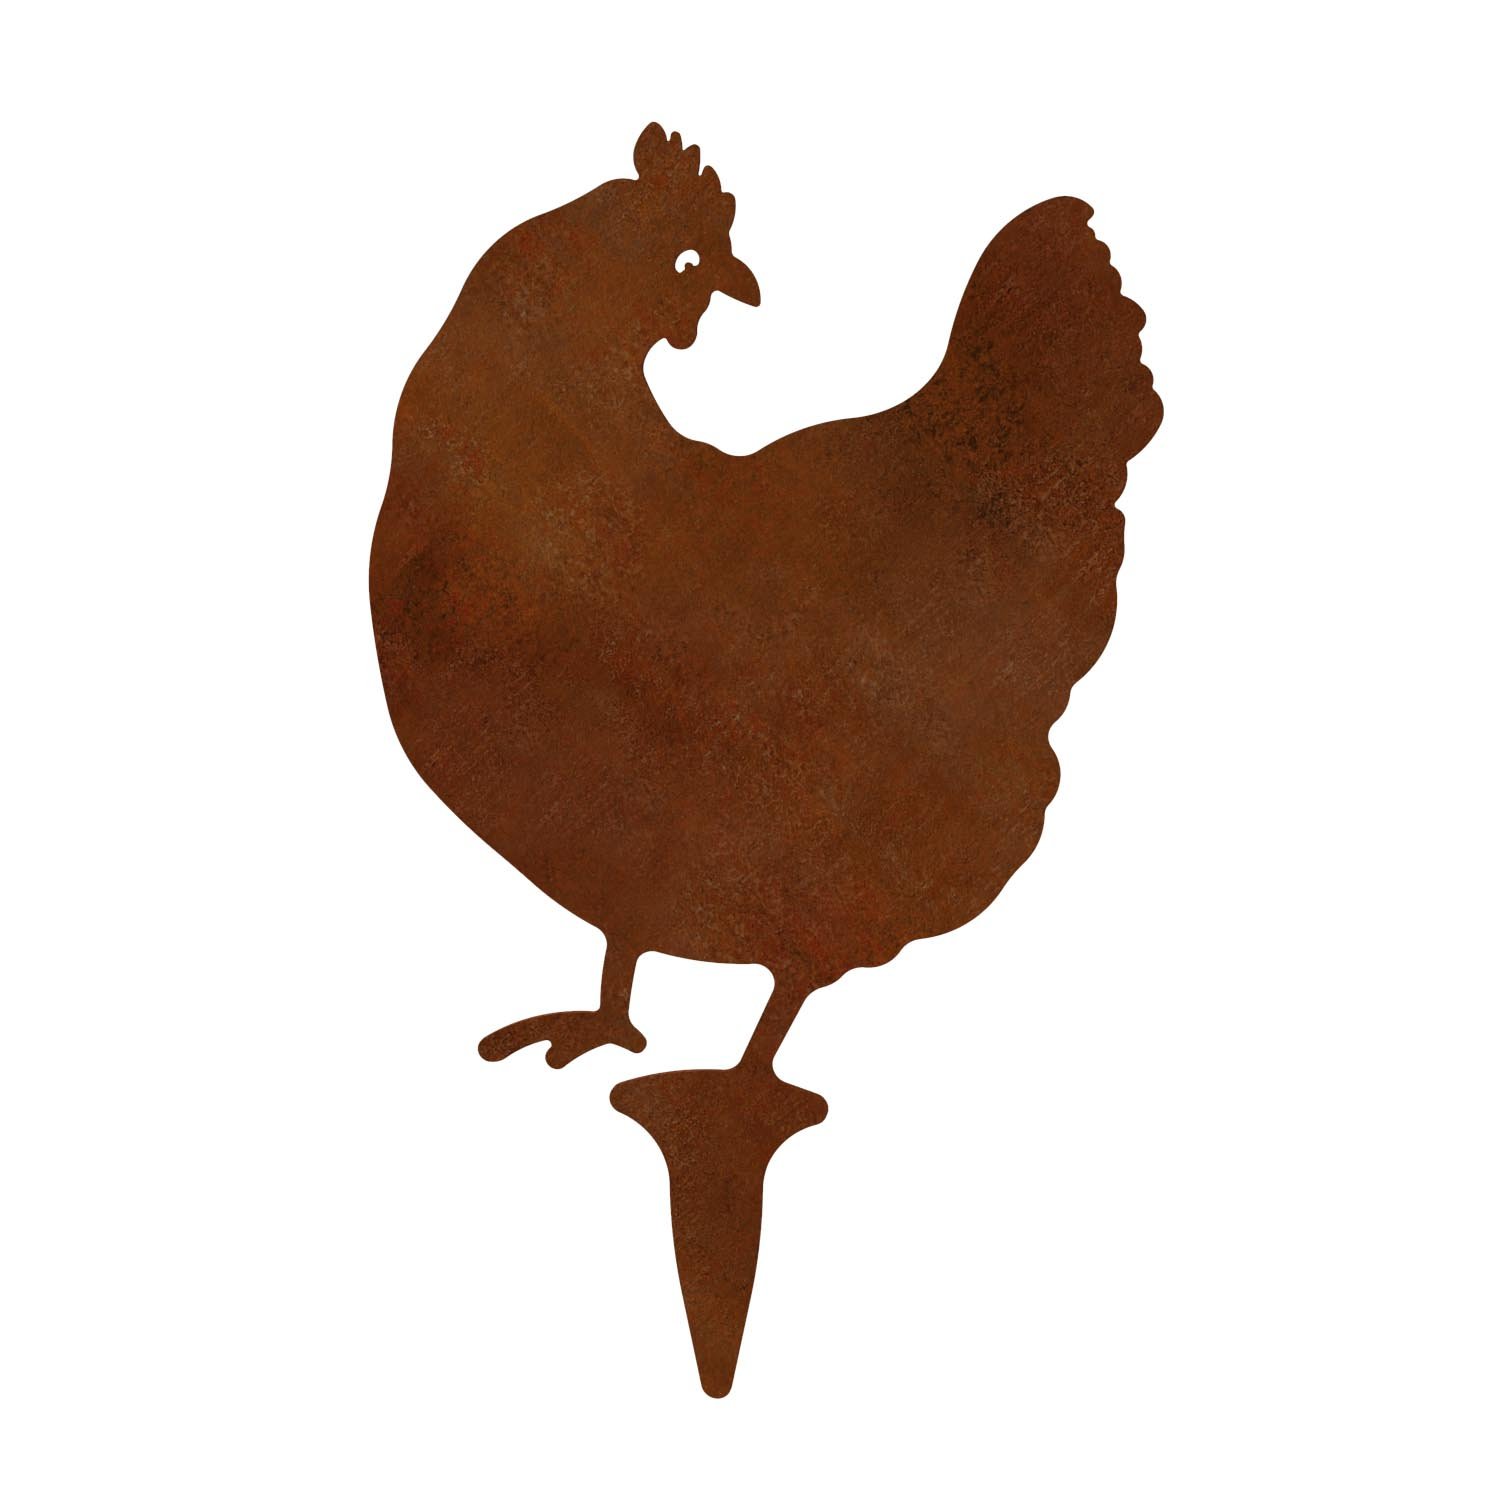 Gartenfigur Huhn aus Cortenstahl, Höhe 32,5 cm, steckbar